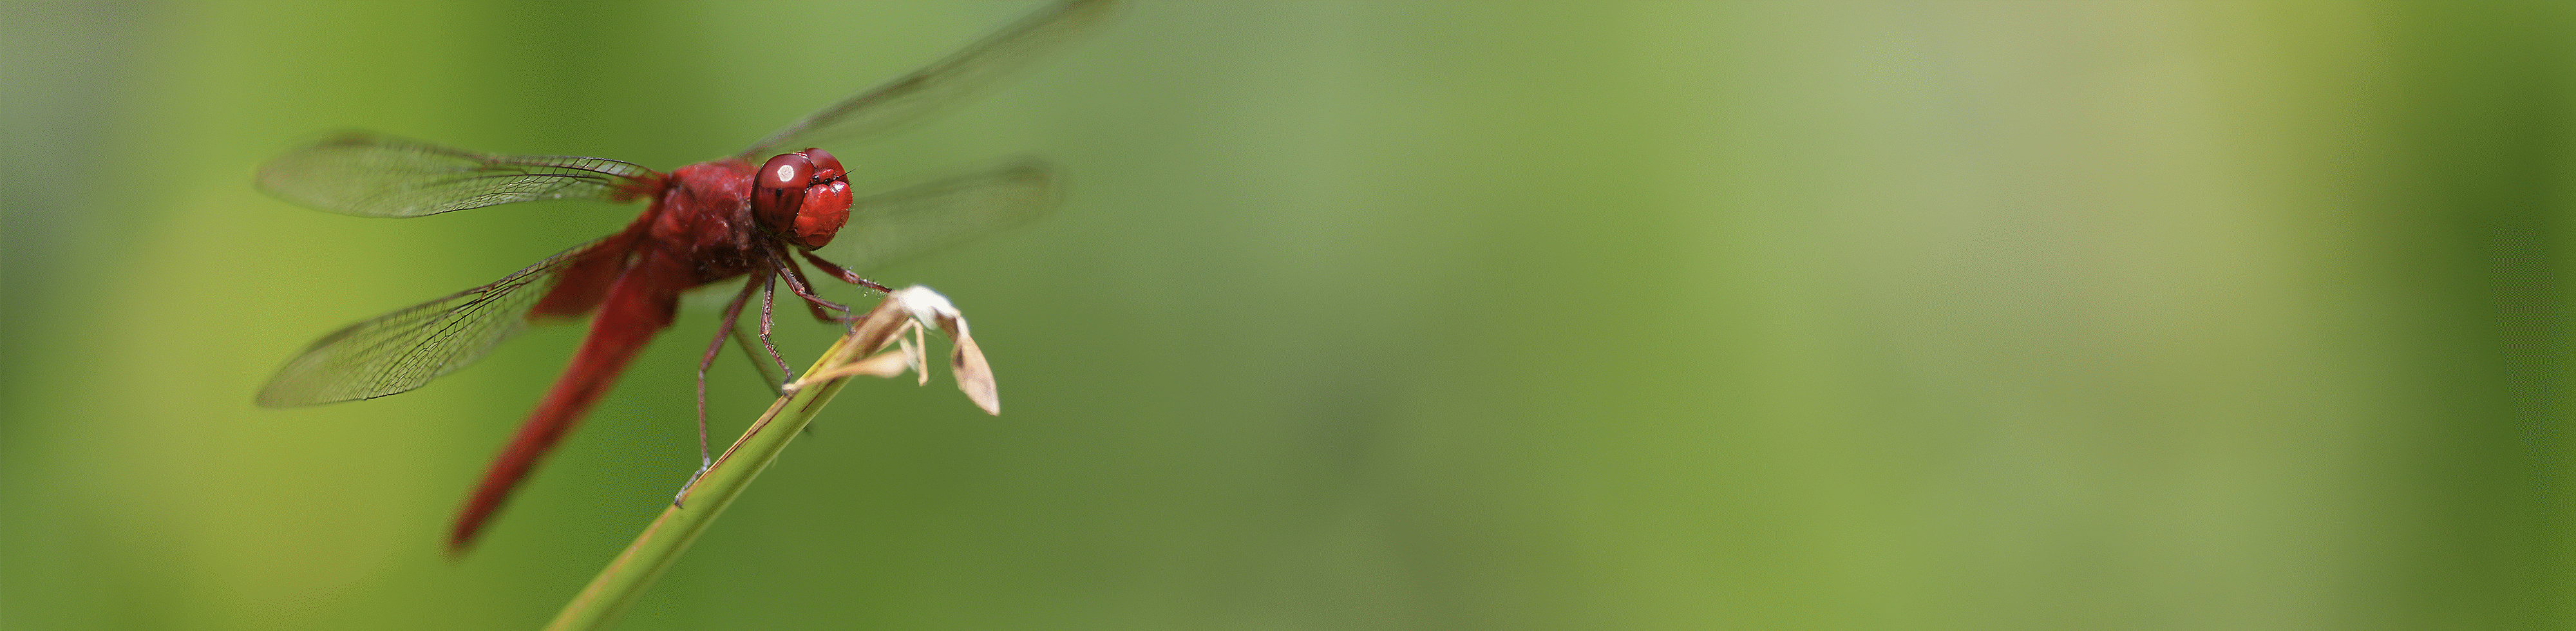 Abbildung einer Libelle auf einem Ast